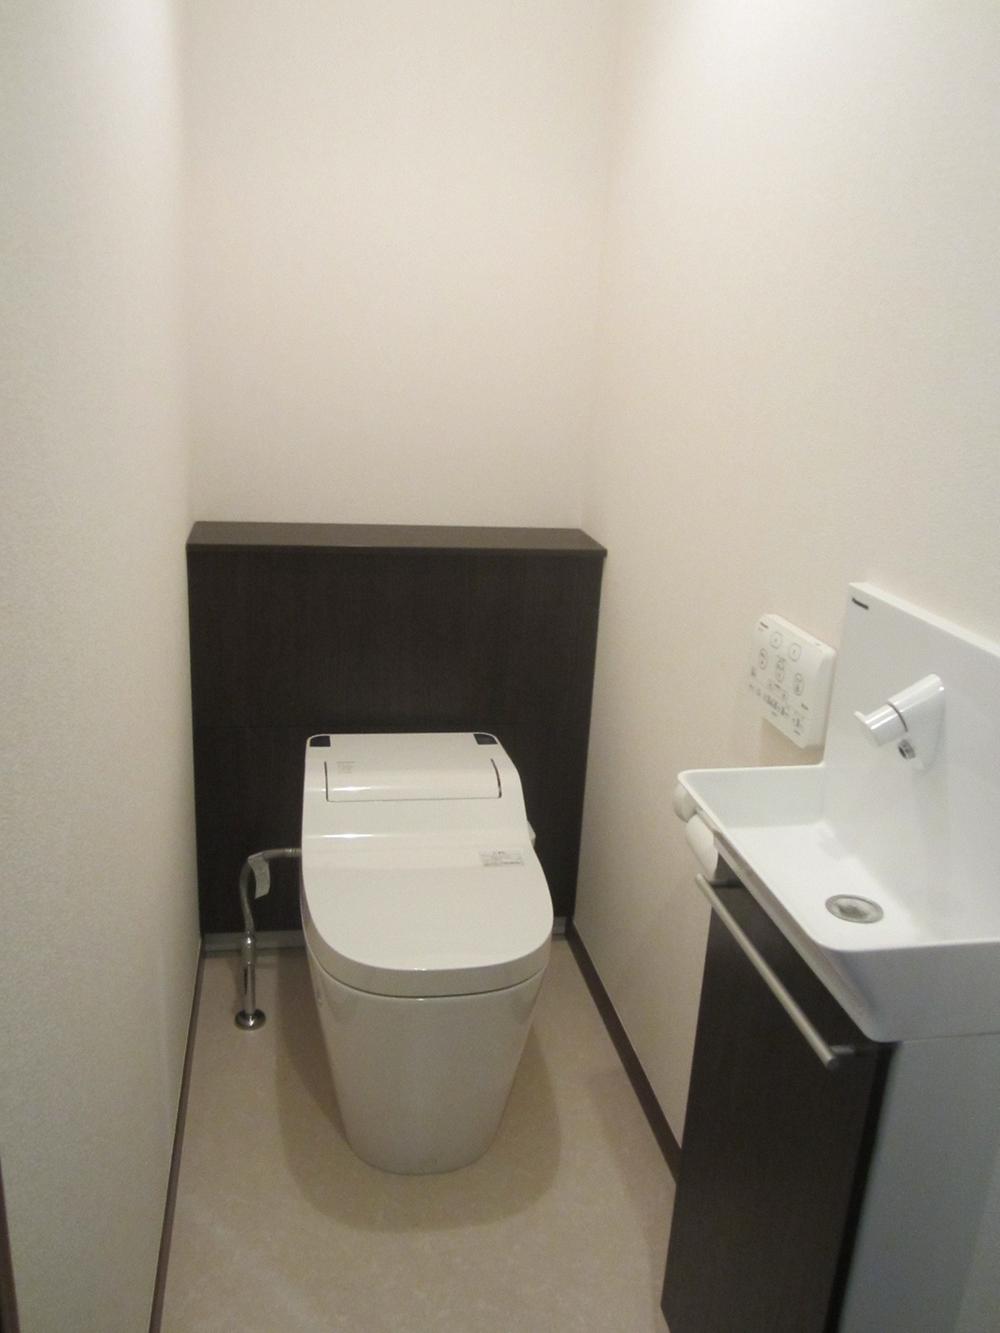 Toilet. Second floor toilet / Indoor (June 2013) Shooting